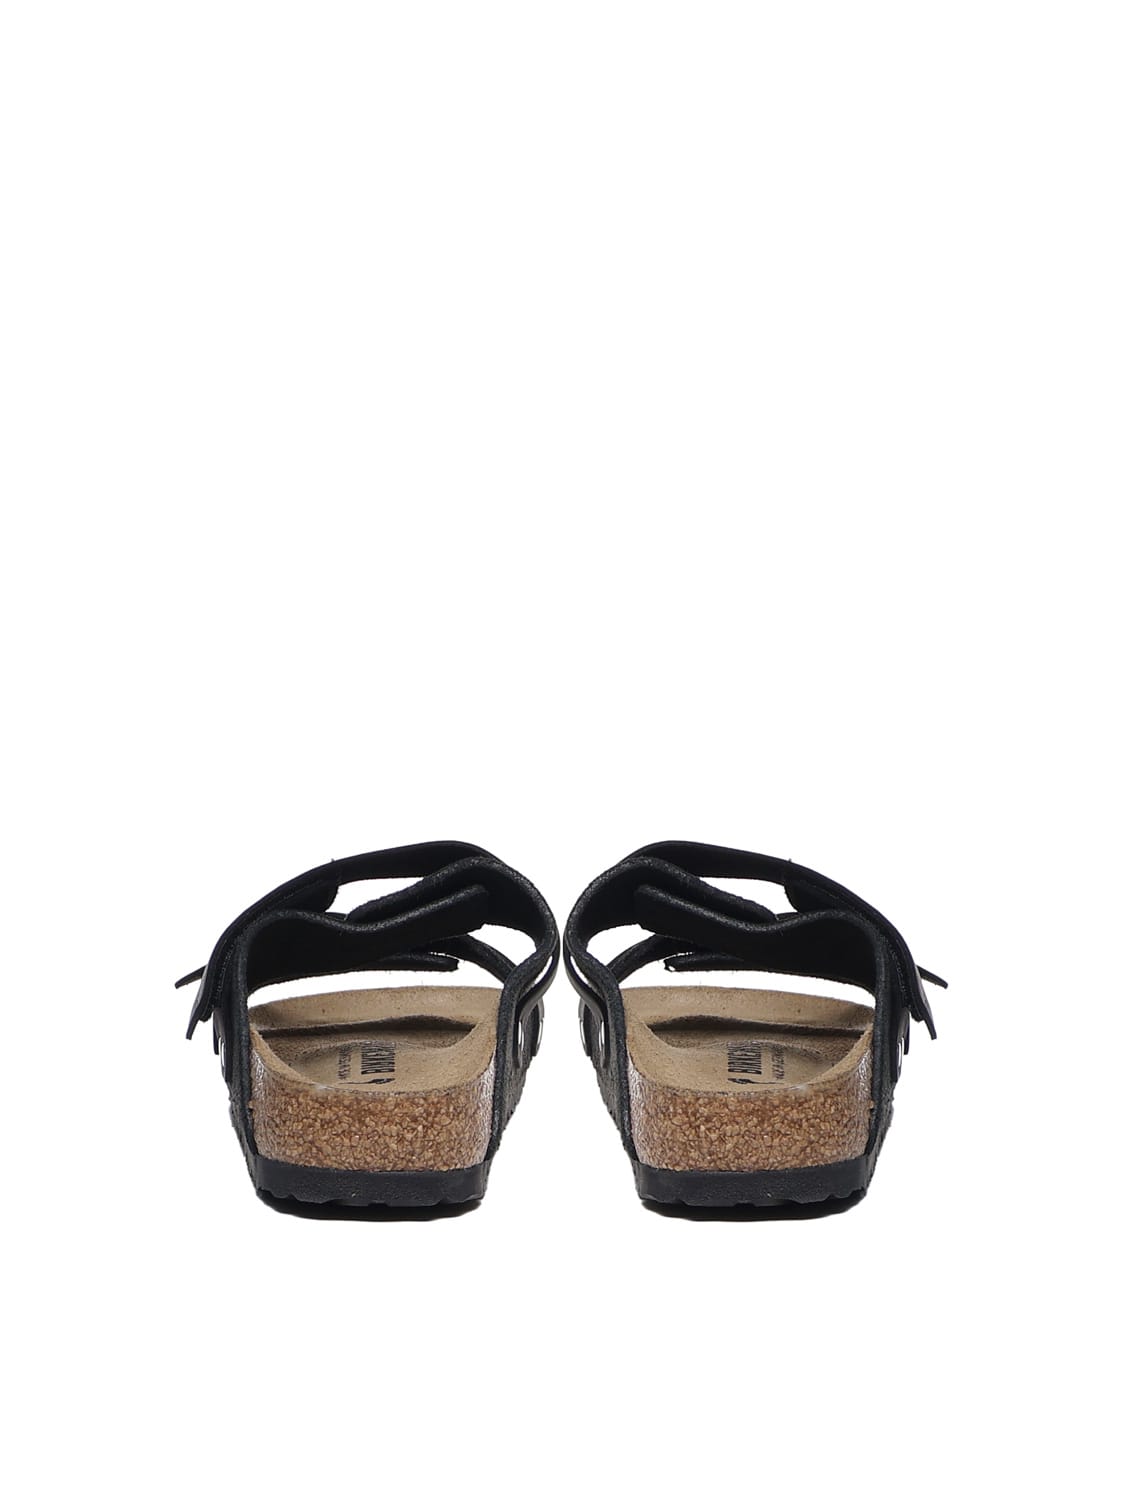 Shop Birkenstock Uji Sandals In Black Oiled Leather